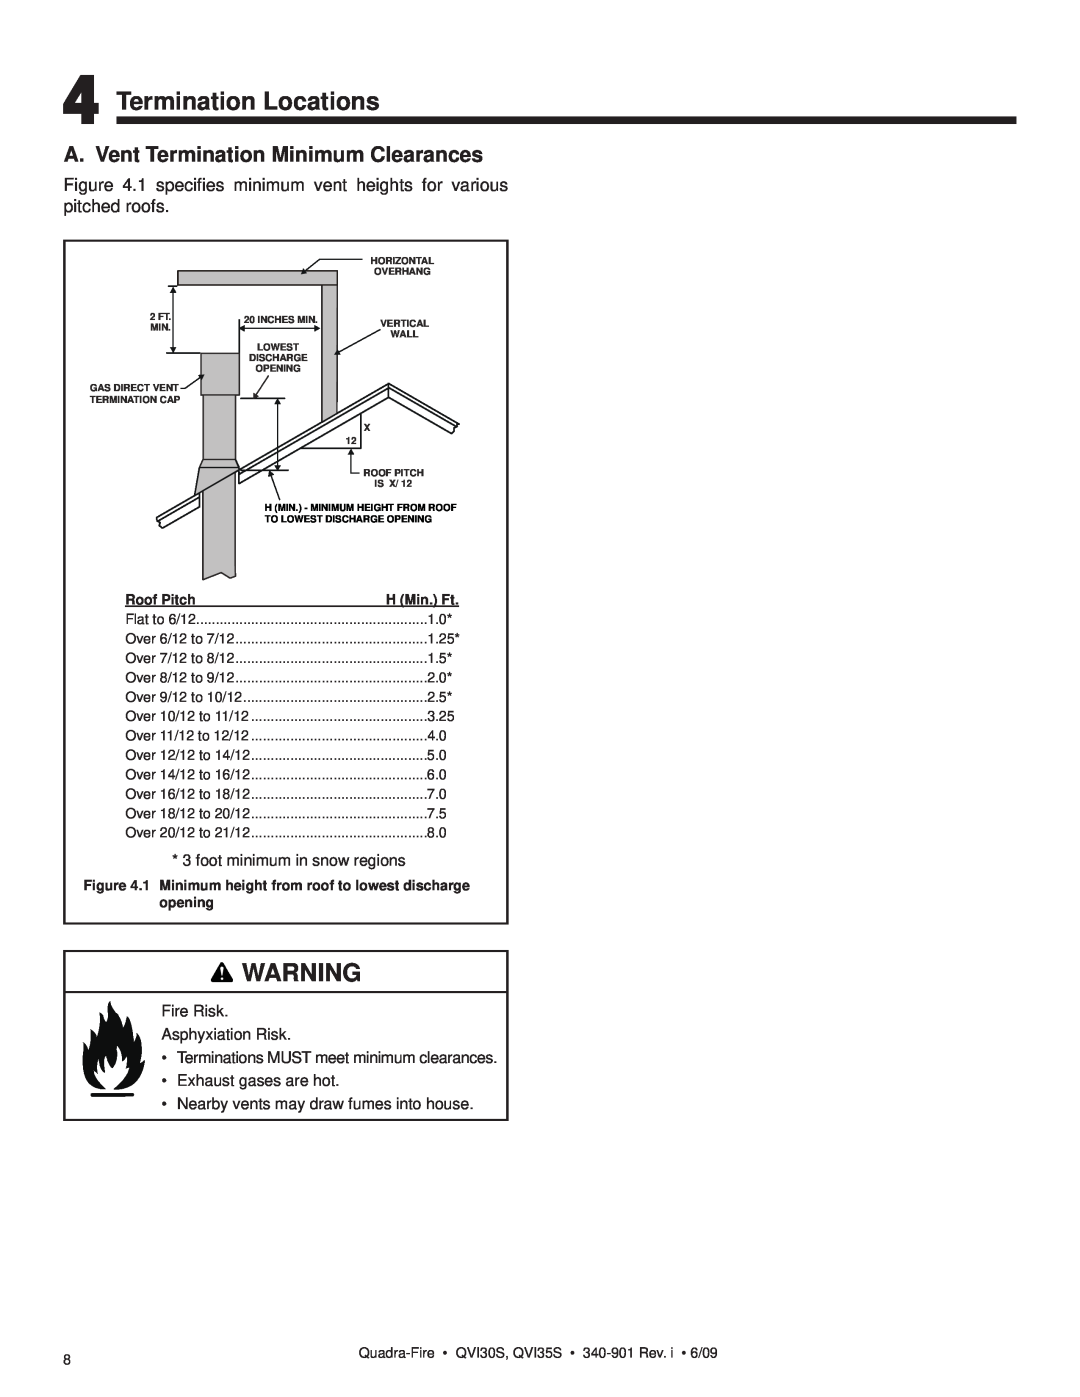 Quadra-Fire QVI35S, QVI30S Termination Locations, A. Vent Termination Minimum Clearances, Roof Pitch, 1.25, 3.25 